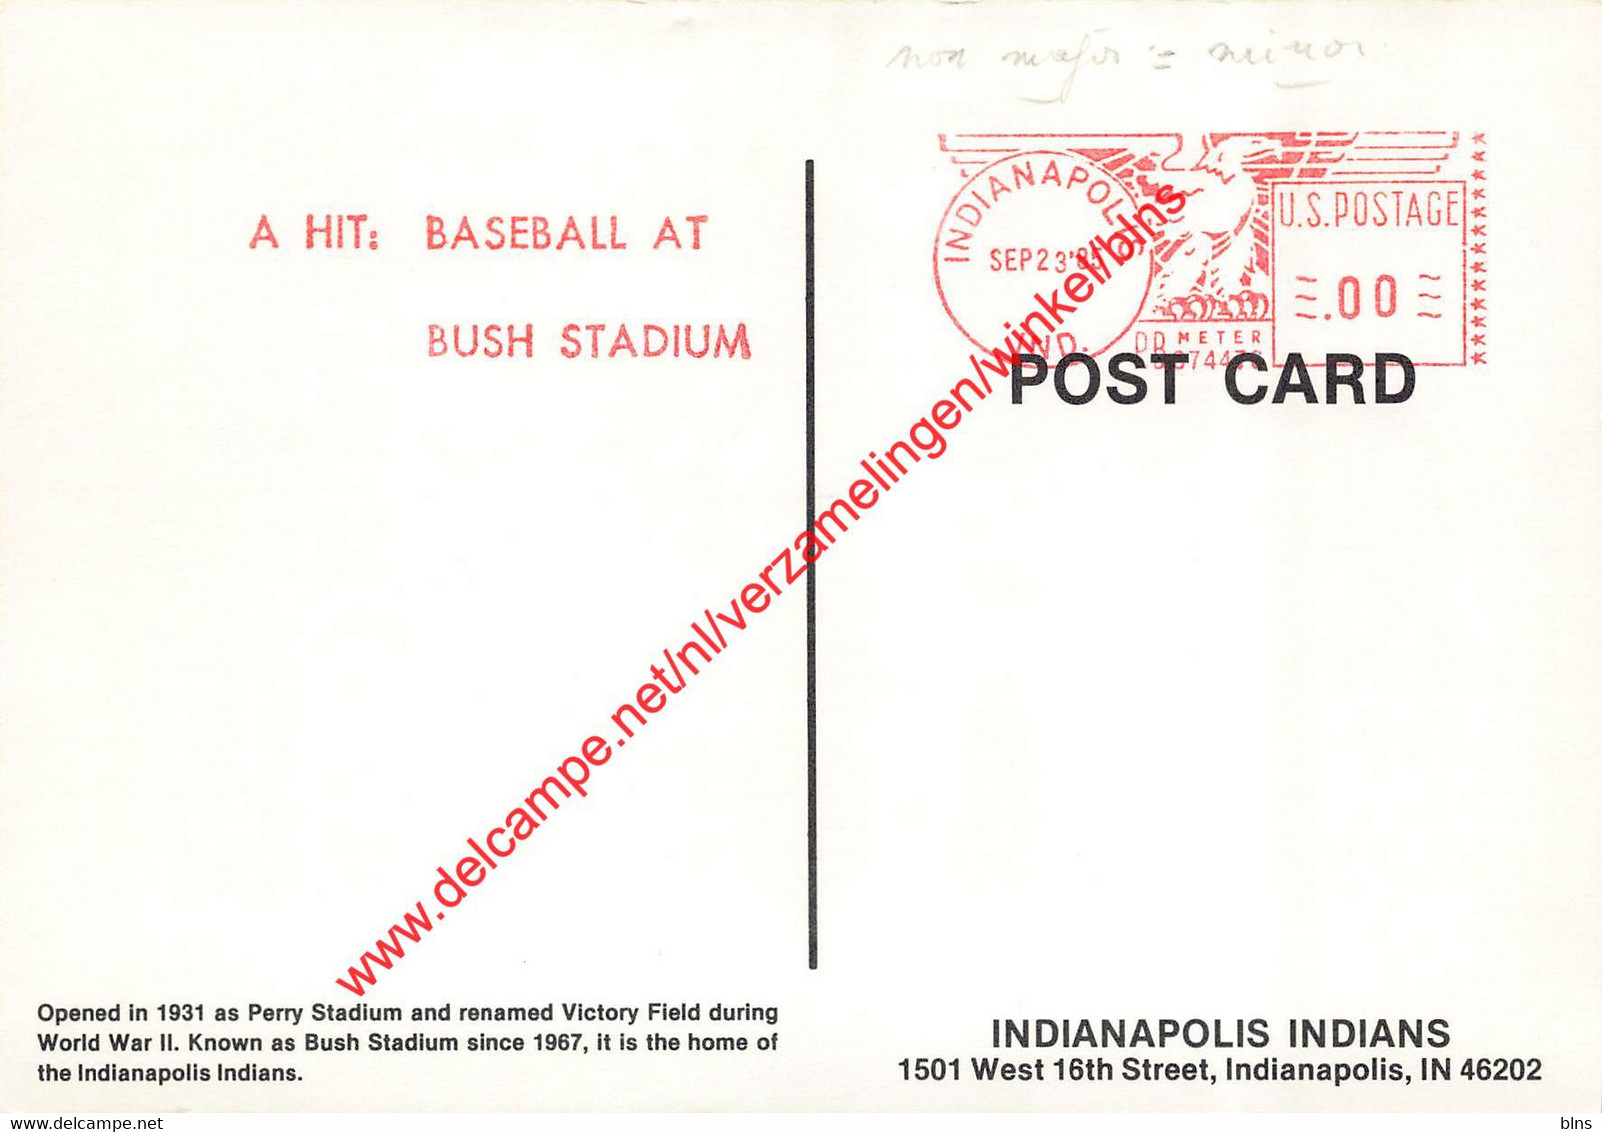 Indianapolis Indians - Bush Stadium - Indiana - United States - Baseball - Indianapolis